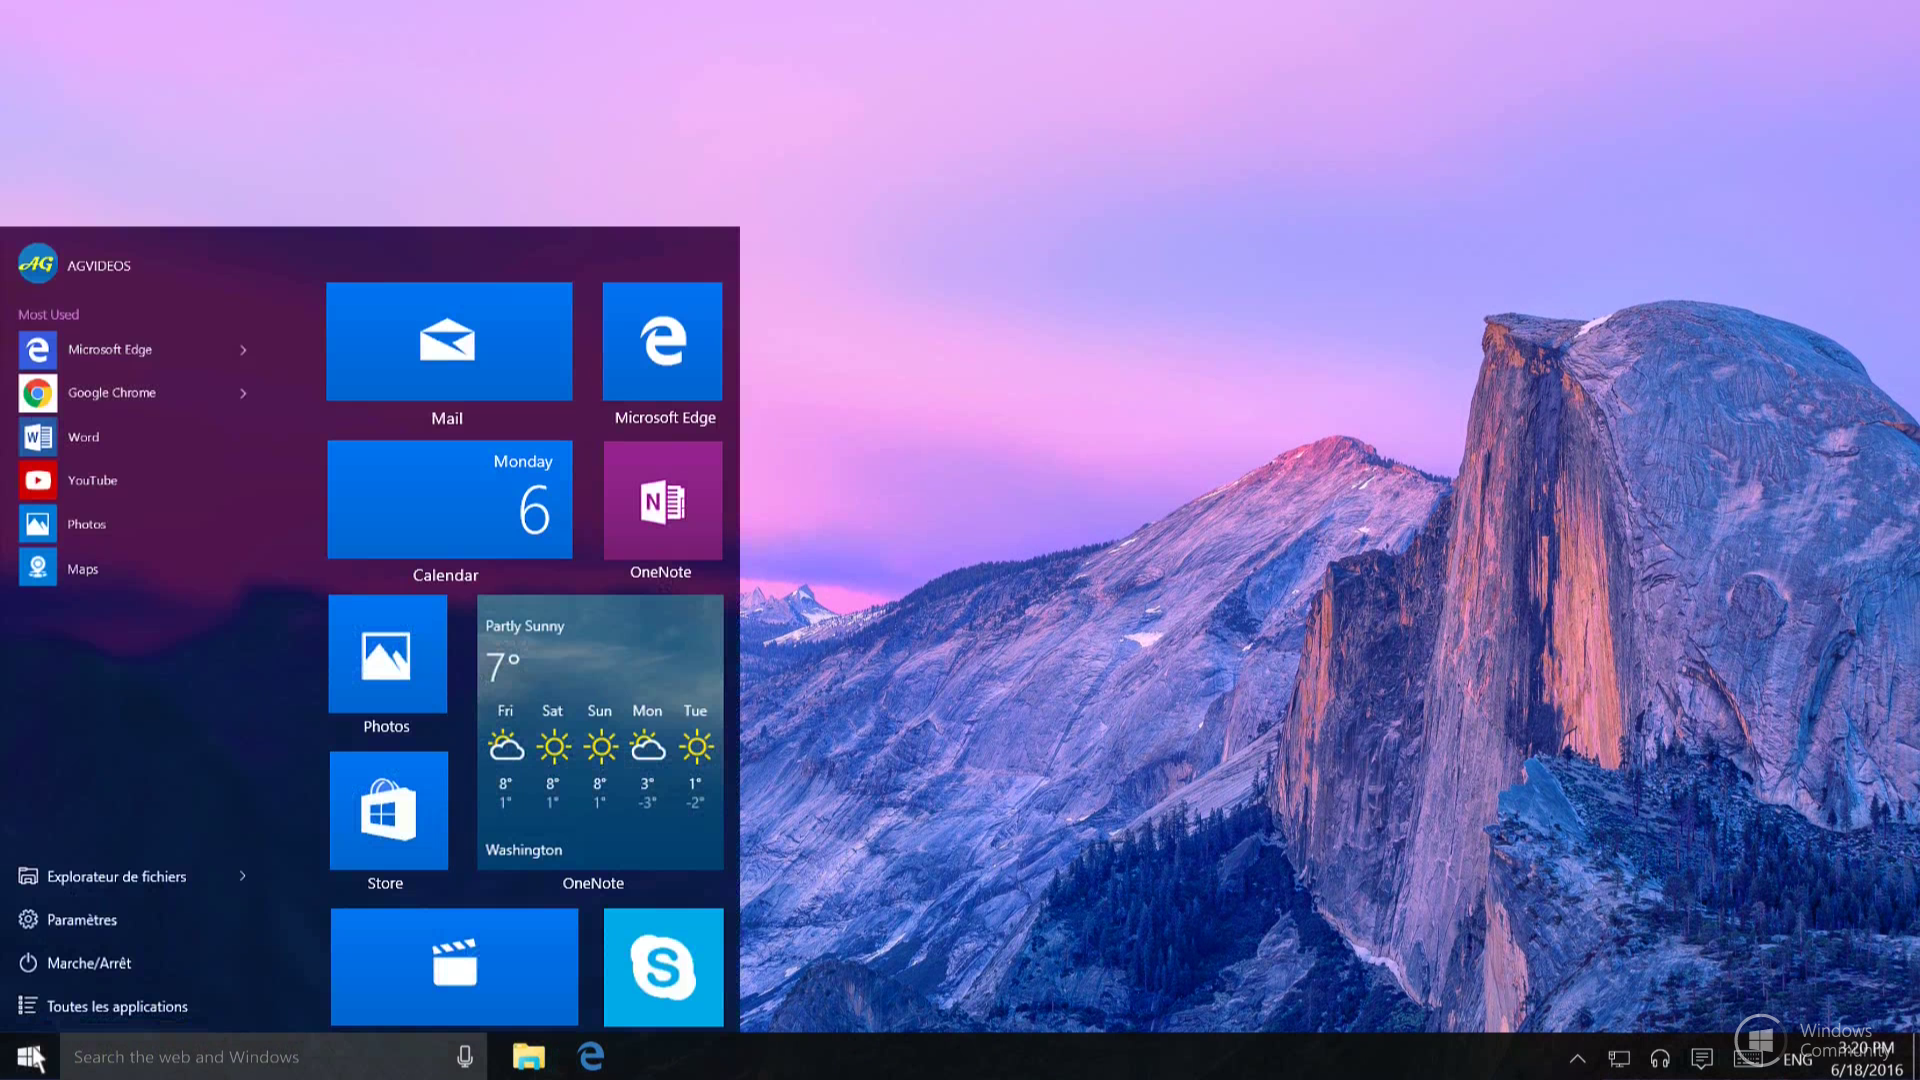 Nova 10 экран. ОС Microsoft Windows 10. Виндовс 10 Redstone. Рабочий стол Windows 10. Красивый Интерфейс рабочего стола.